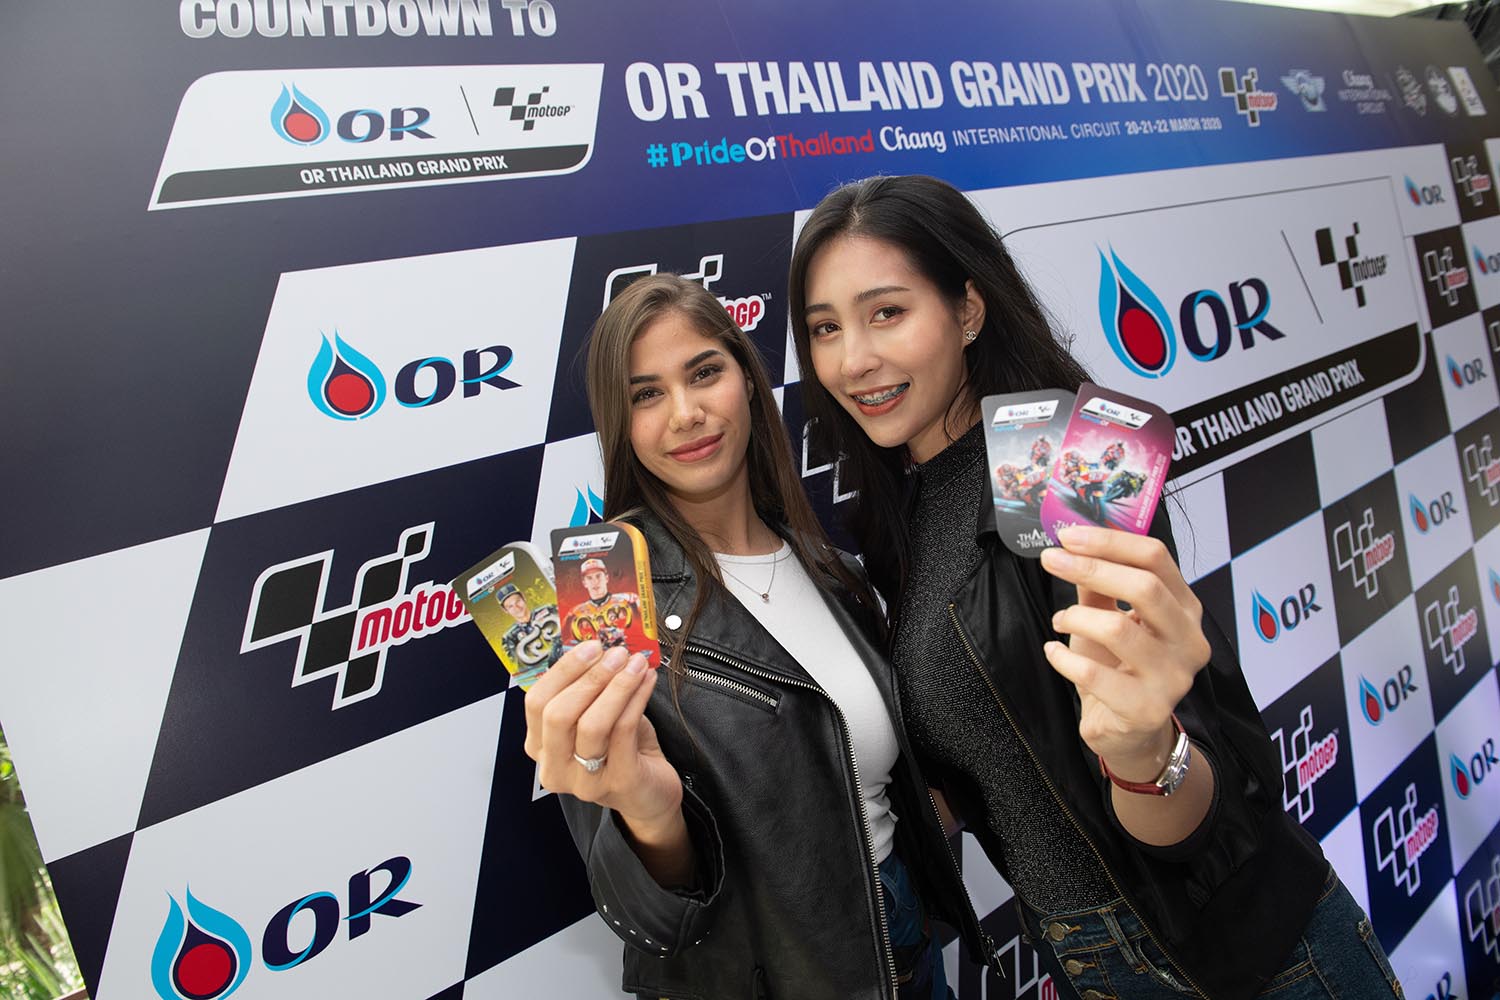 ฮอนด้าพร้อมสนับสนุนโออาร์ไทยแลนด์กรังด์ปรีซ์เต็มสูบ ชวนแฟนชาวไทยส่งแรงเชียร์ ก้อง-สมเกียรติ คว้าโพเดี้ยมโฮมเรซให้ได้